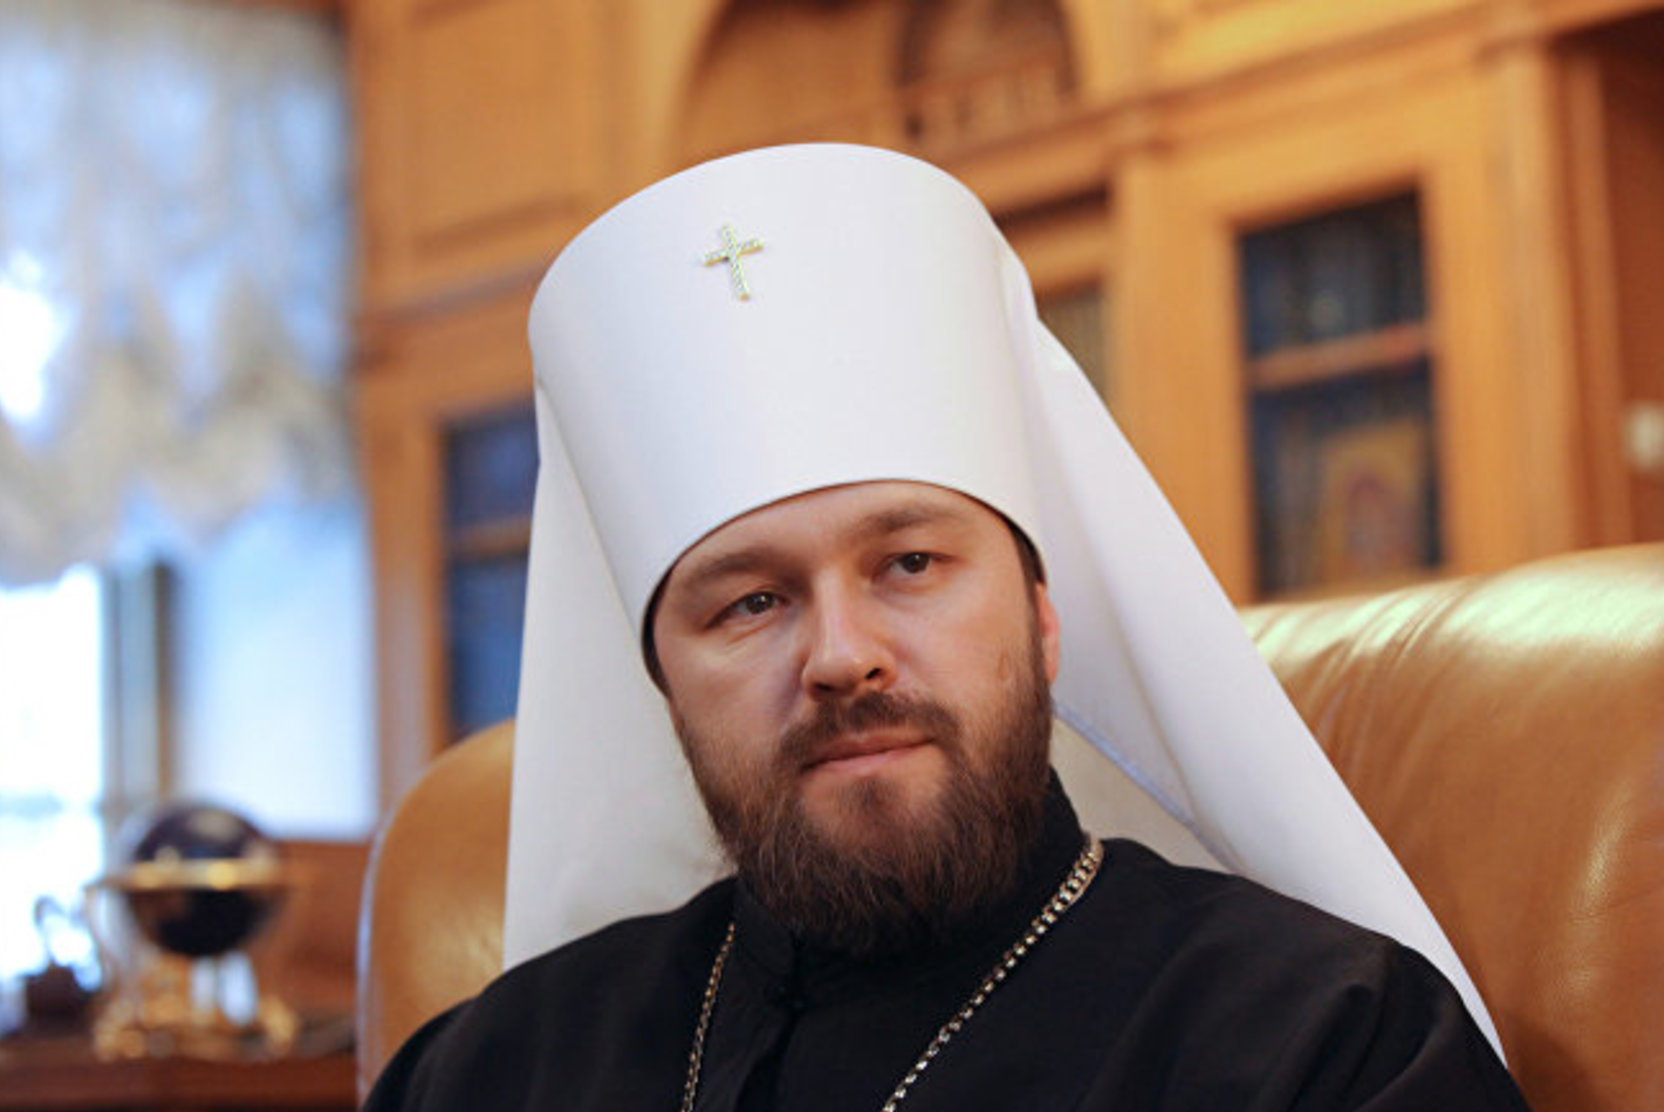 СМИ нашли у митрополита РПЦ элитный пентхаус в Испании